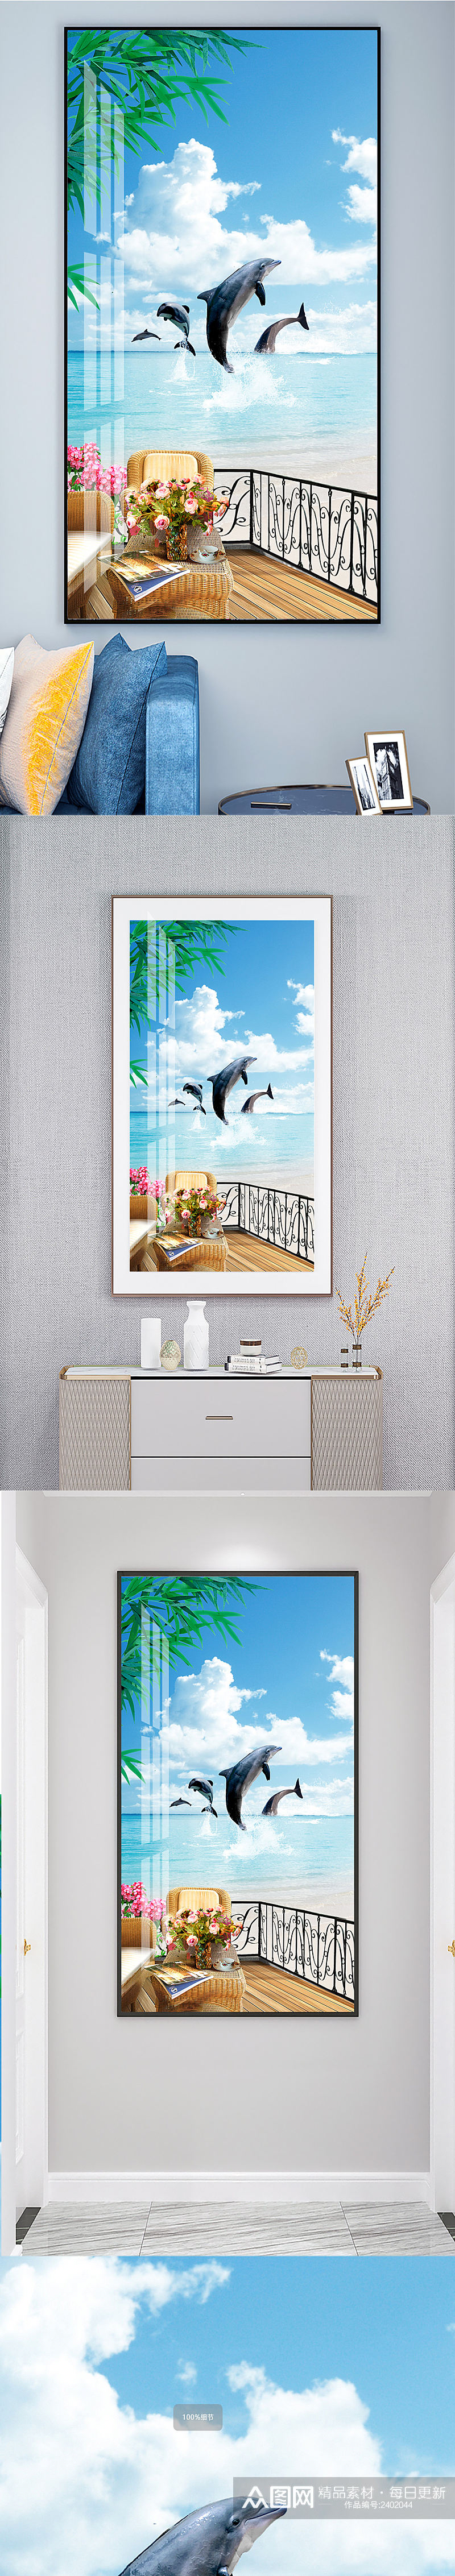 海豚沙滩阳台装饰画素材